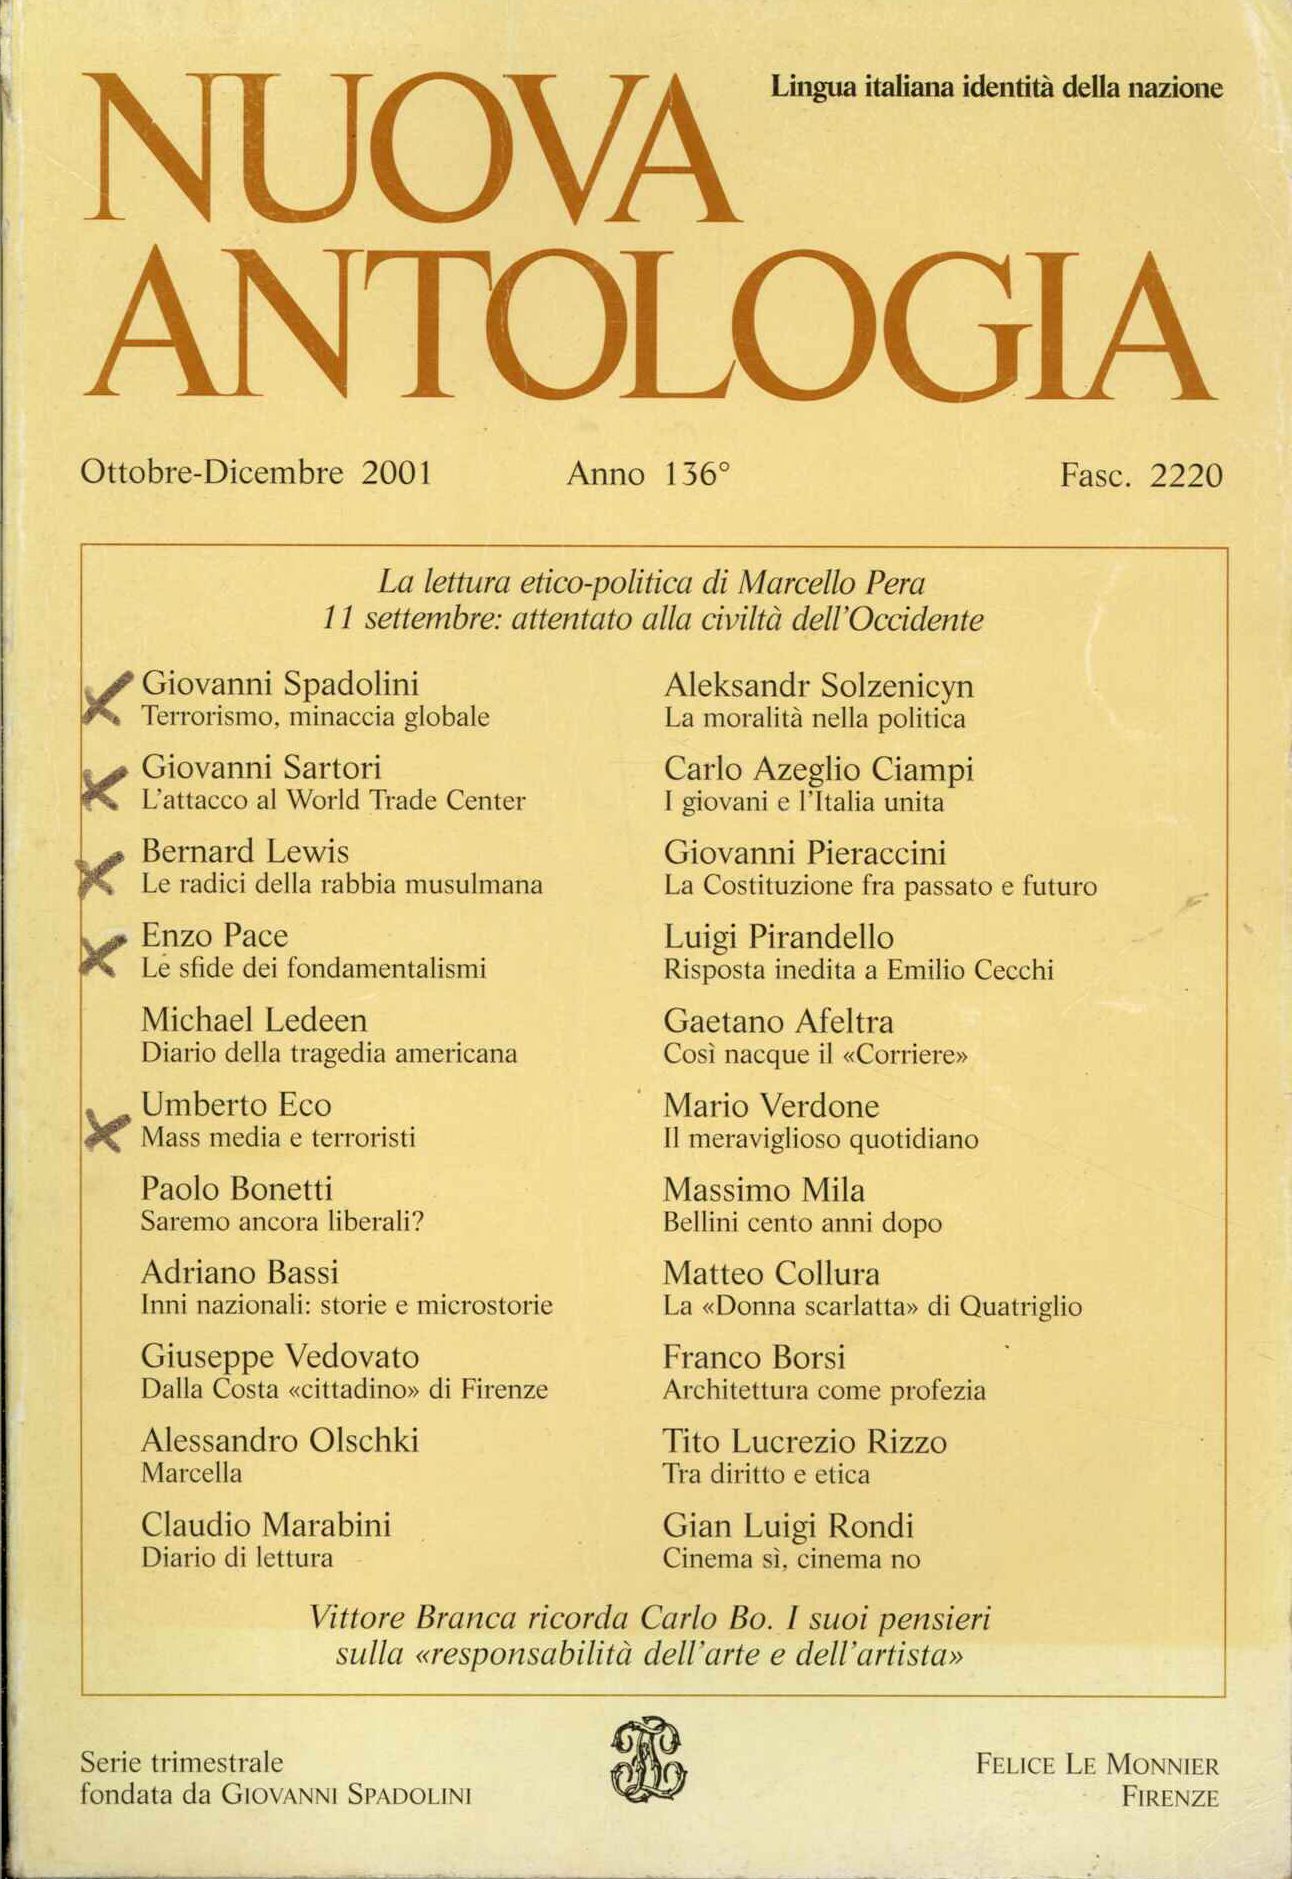 Nuova antologia, ottobre - dicembre 2001